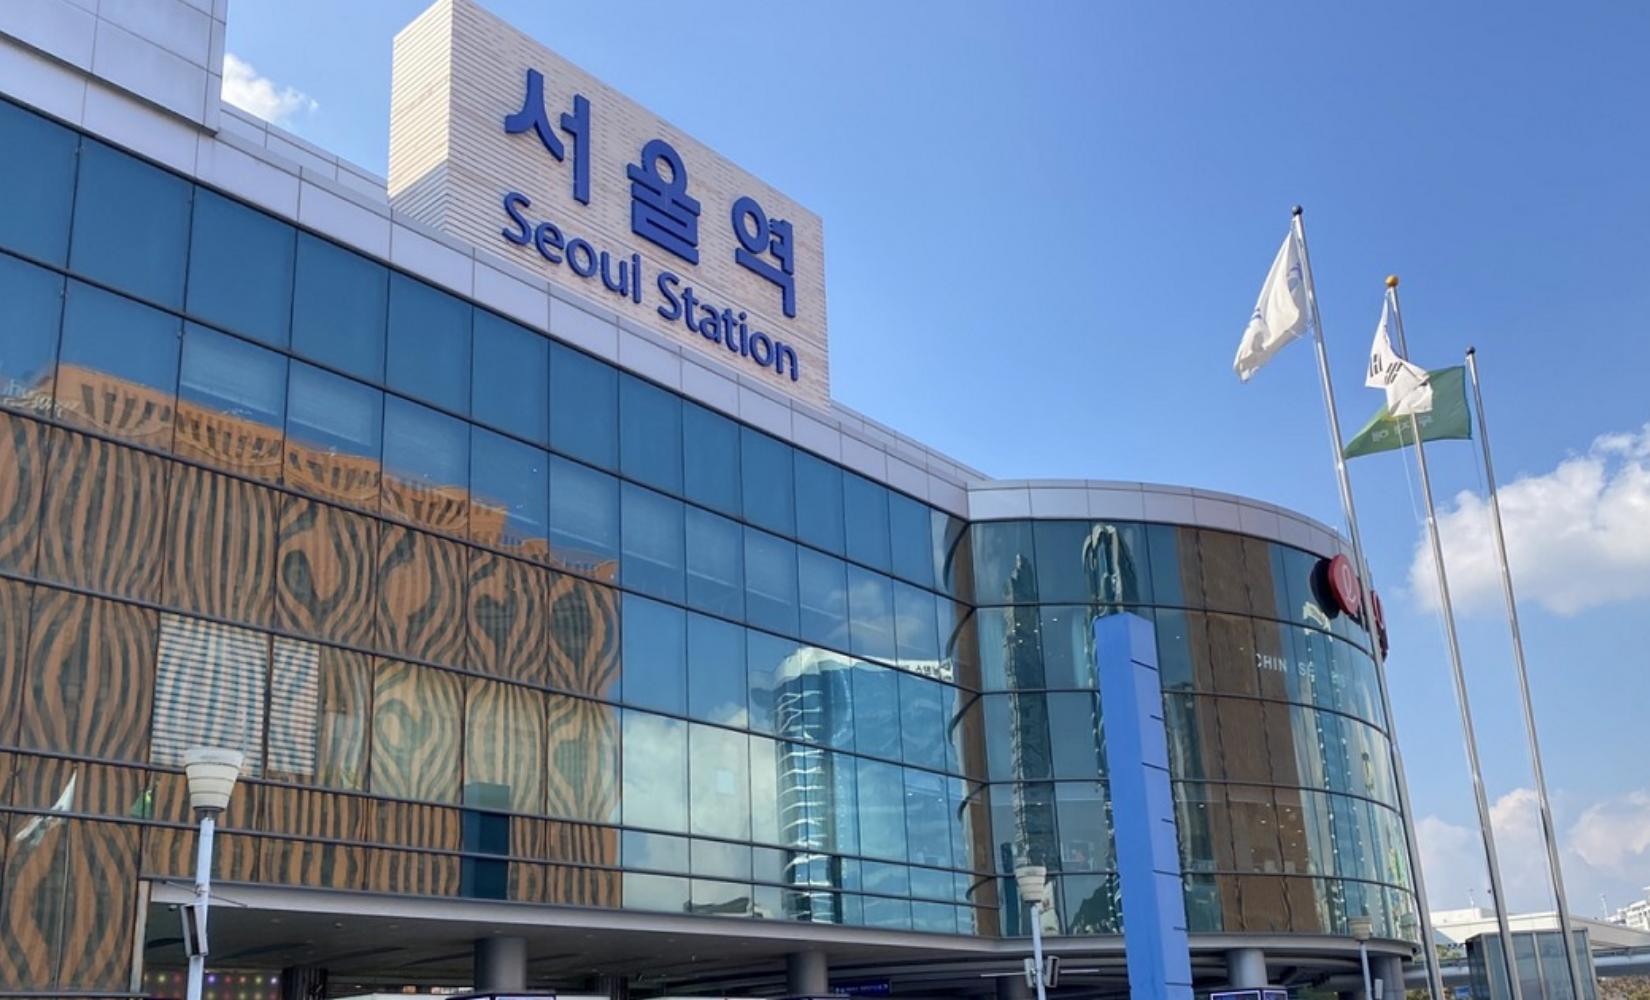 Tổng hợp thông tin giao thông công cộng Ga Seoul